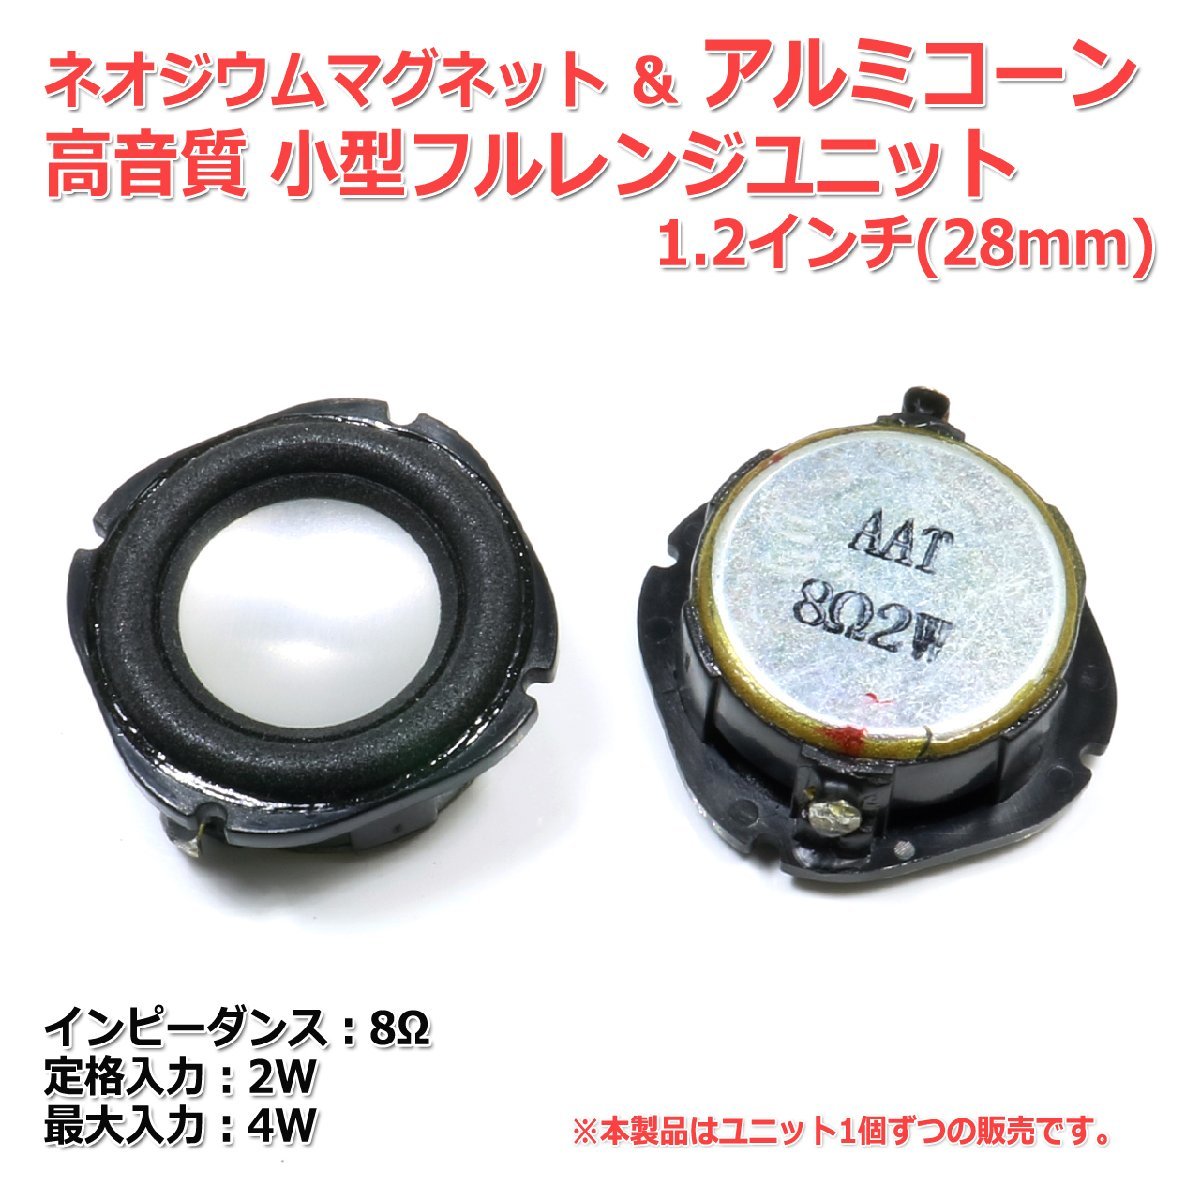 ネオジウムマグネット＆アルミコーン 高音質 小型フルレンジスピーカーユニット1.2インチ(28mm) 8Ω/MAX4W[スピーカー自作/DIYオーディオ]_画像2